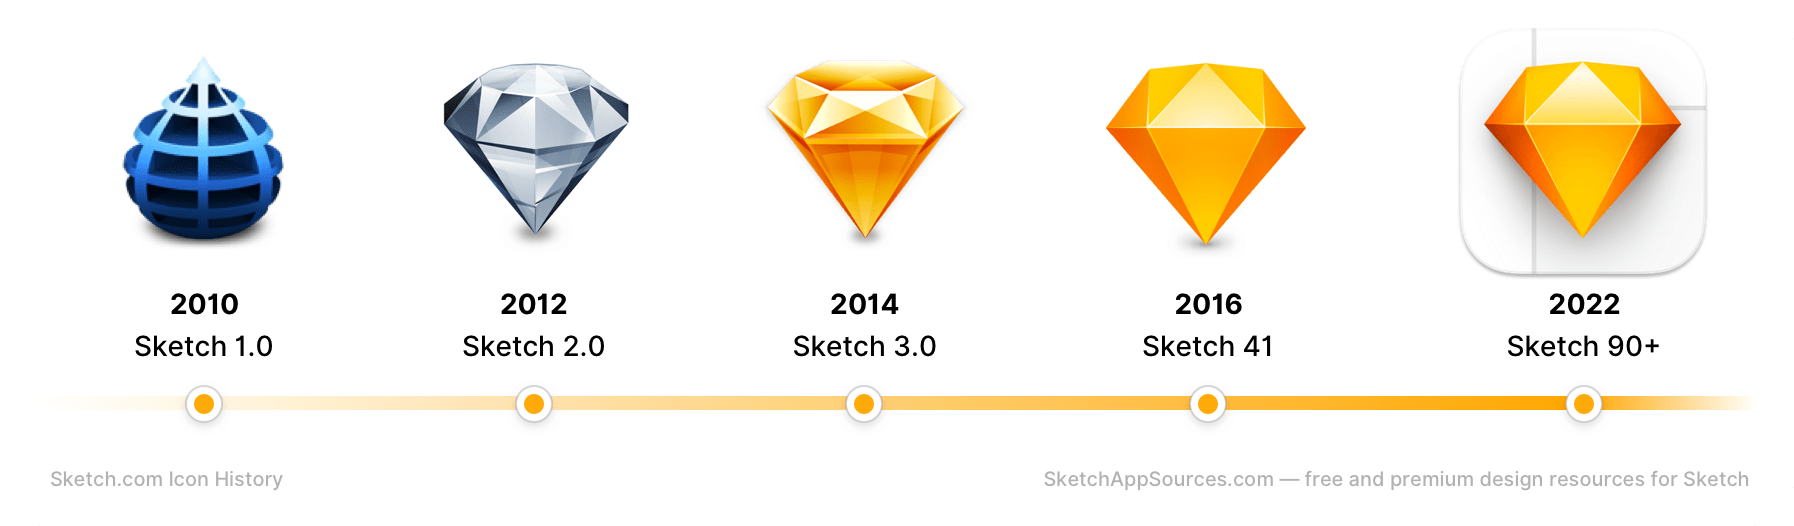 Sketch App Logo Icon History